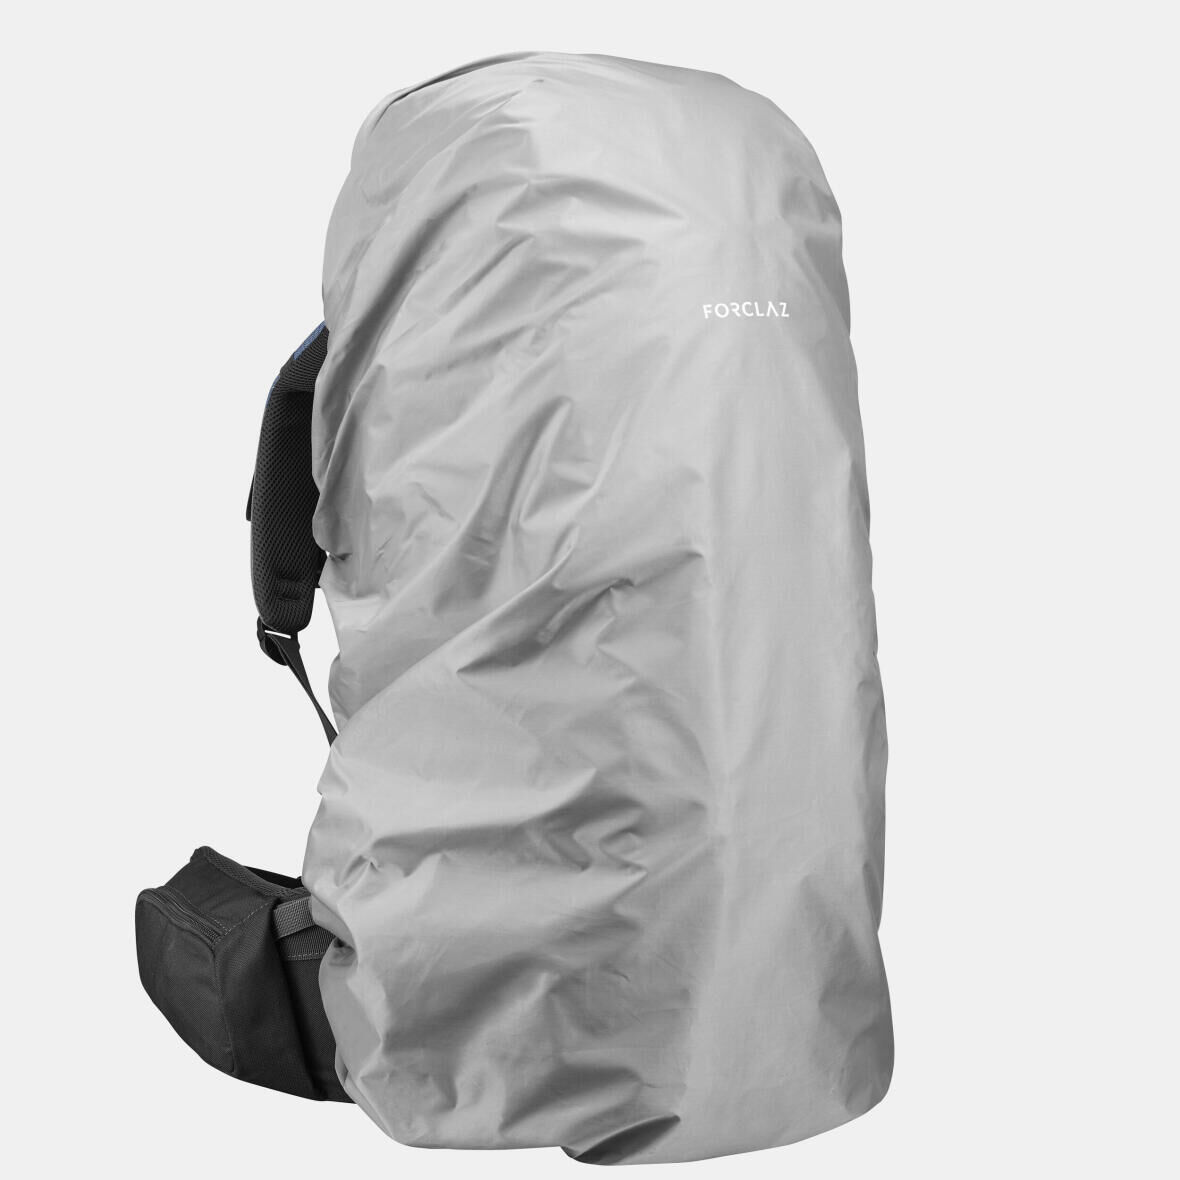 How waterproof is my MT900 backpack?